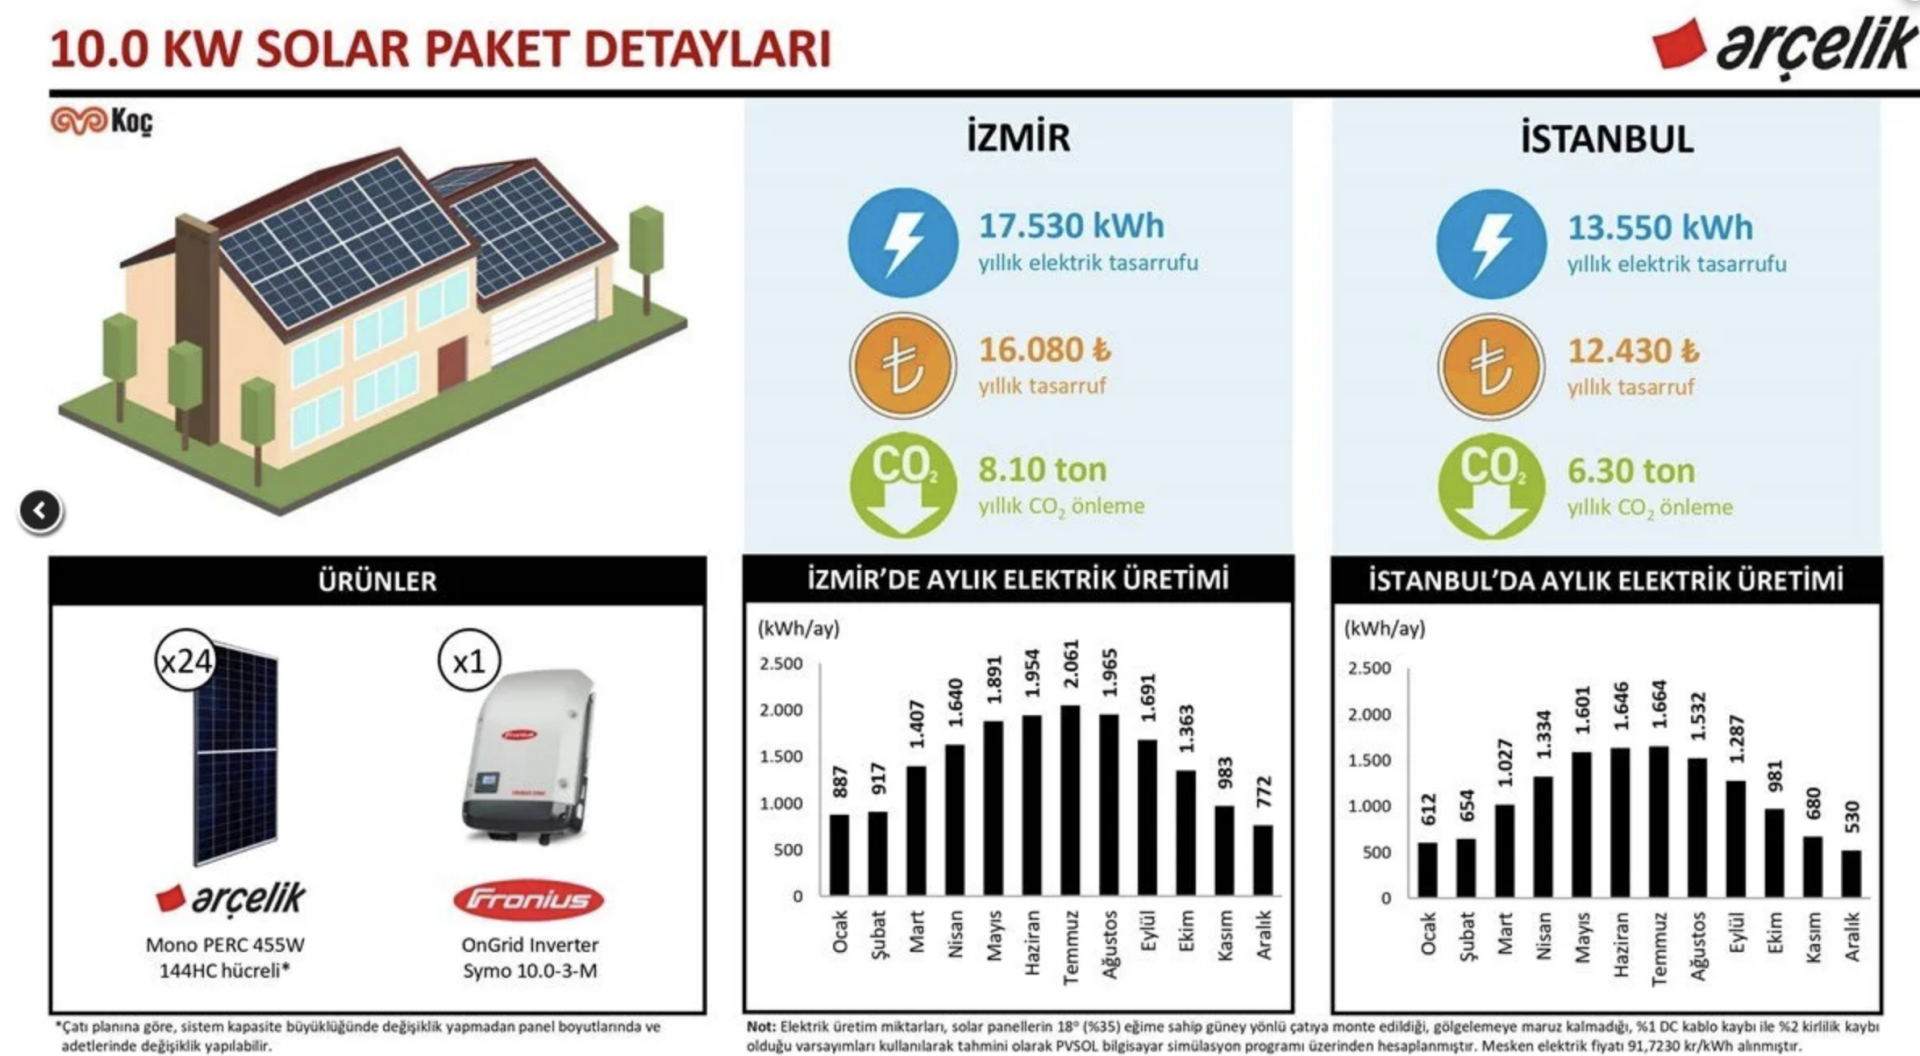 10.0 kW Solar Paket ve Yapı Kredi Leasing